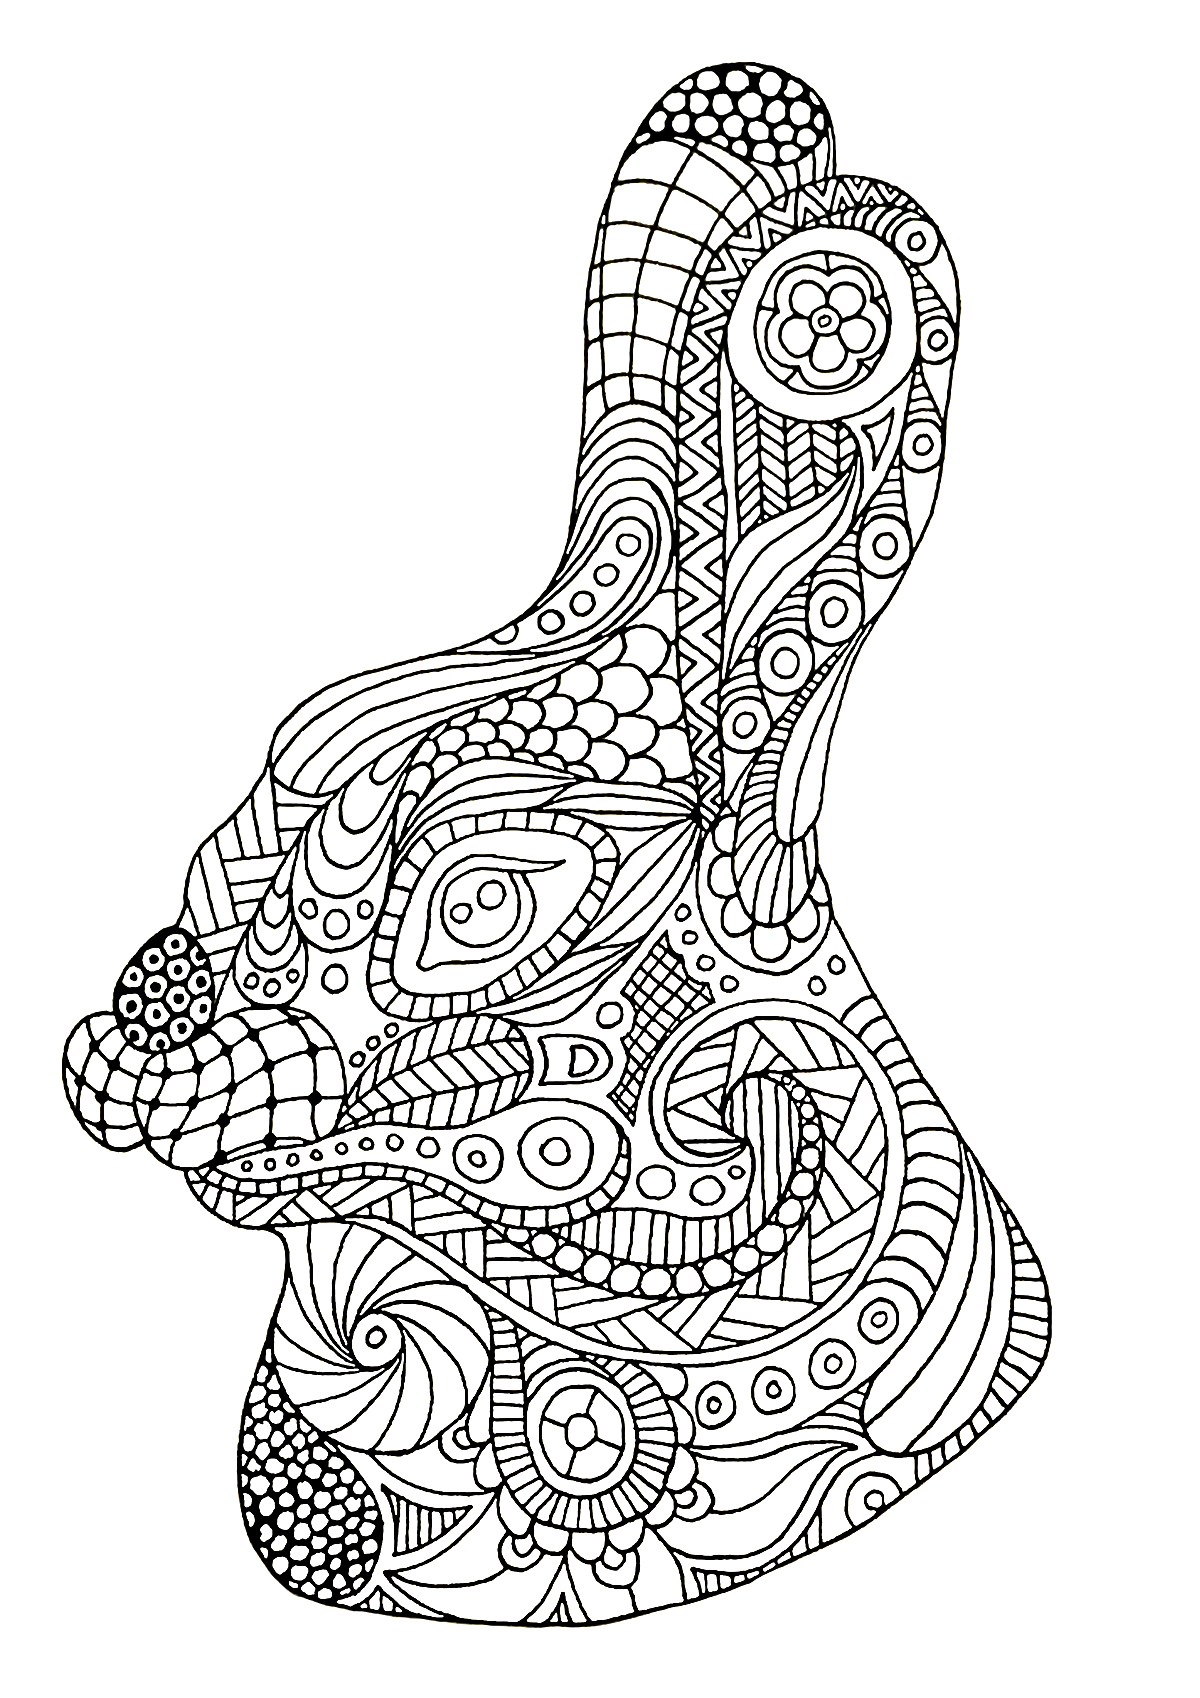 Testa di coniglio disegnata con lo stile Zentangle